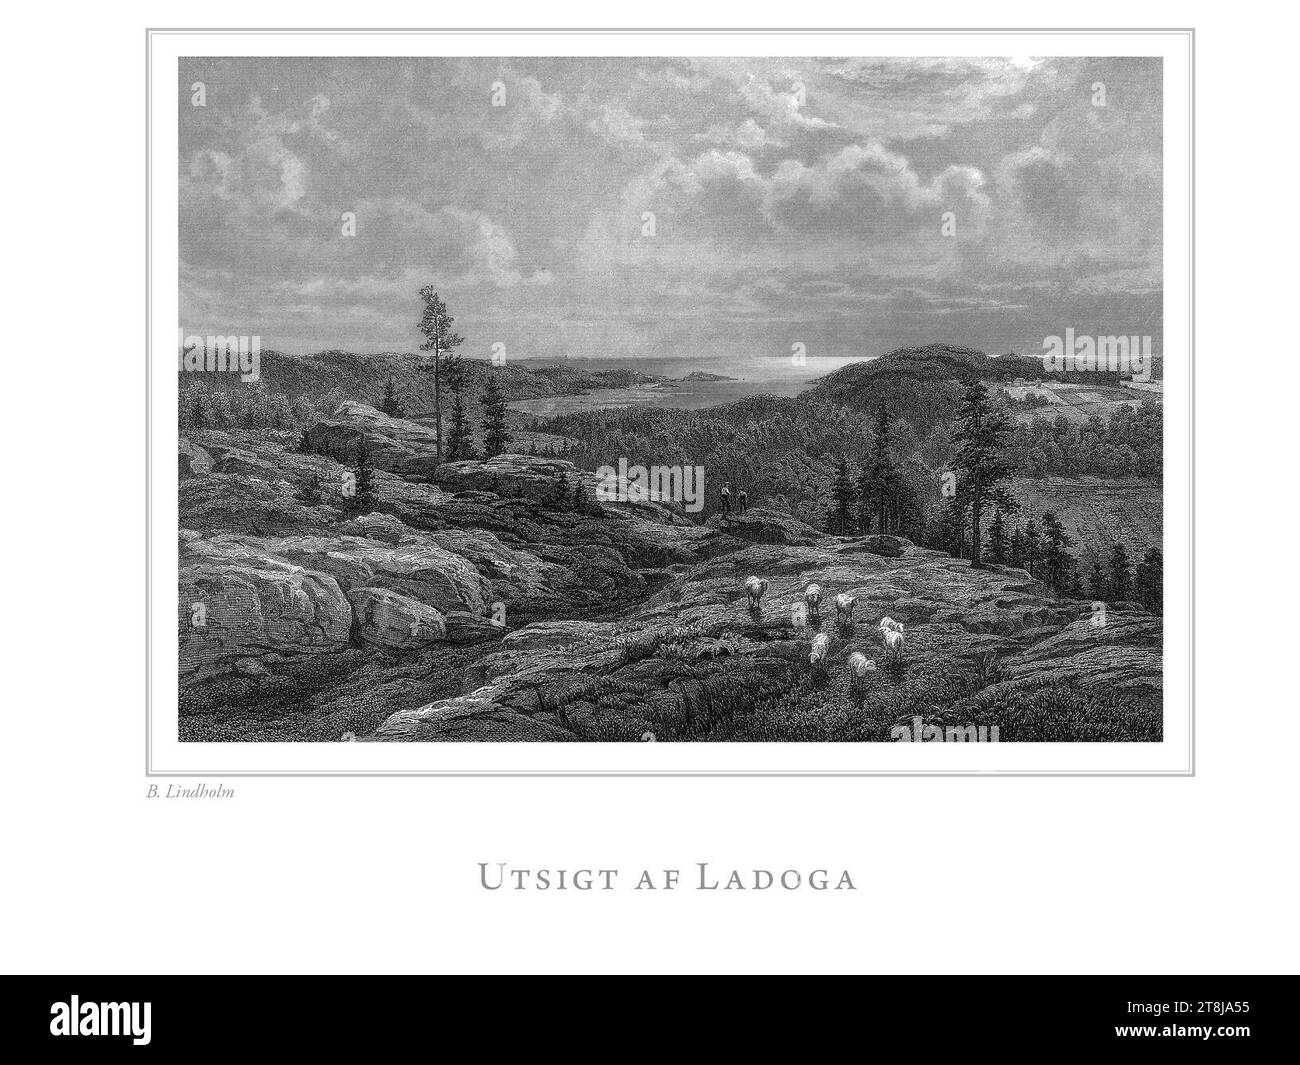 Utsigt af Ladoga - Berndt Lindholm - En resa i Finland - 037. Stock Photo